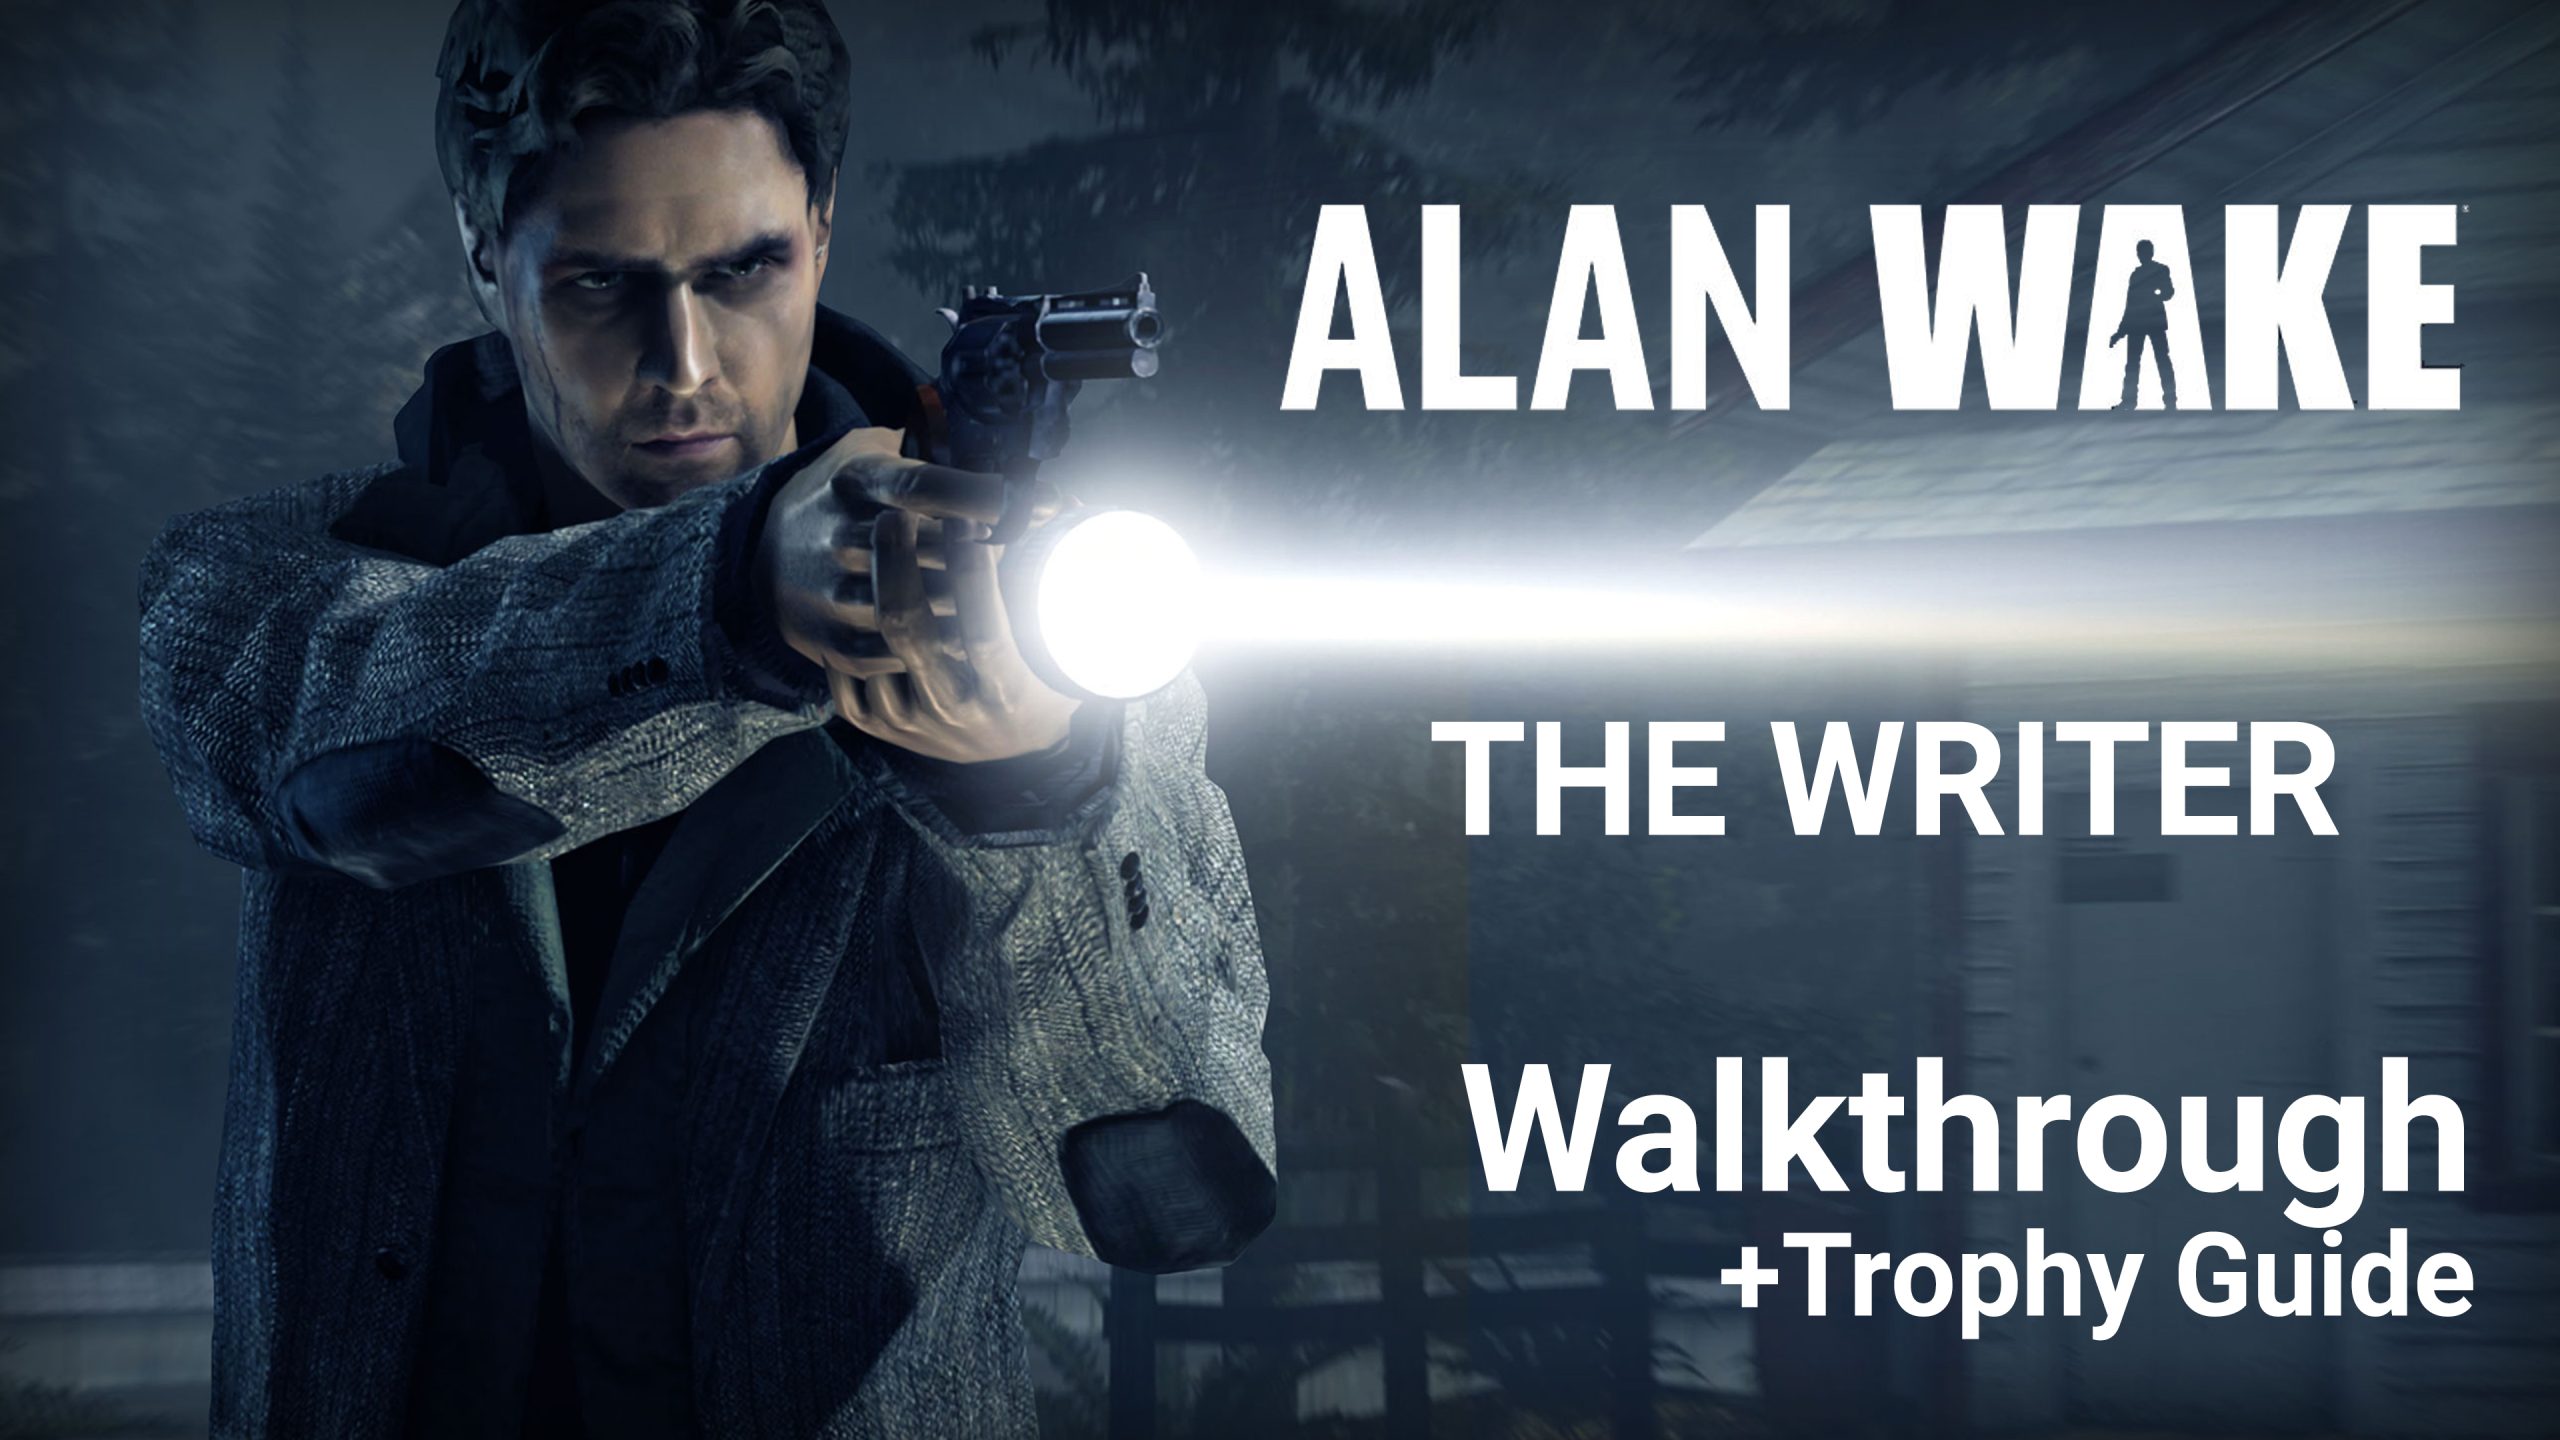 Alan Wake: The Writer – Walkthrough